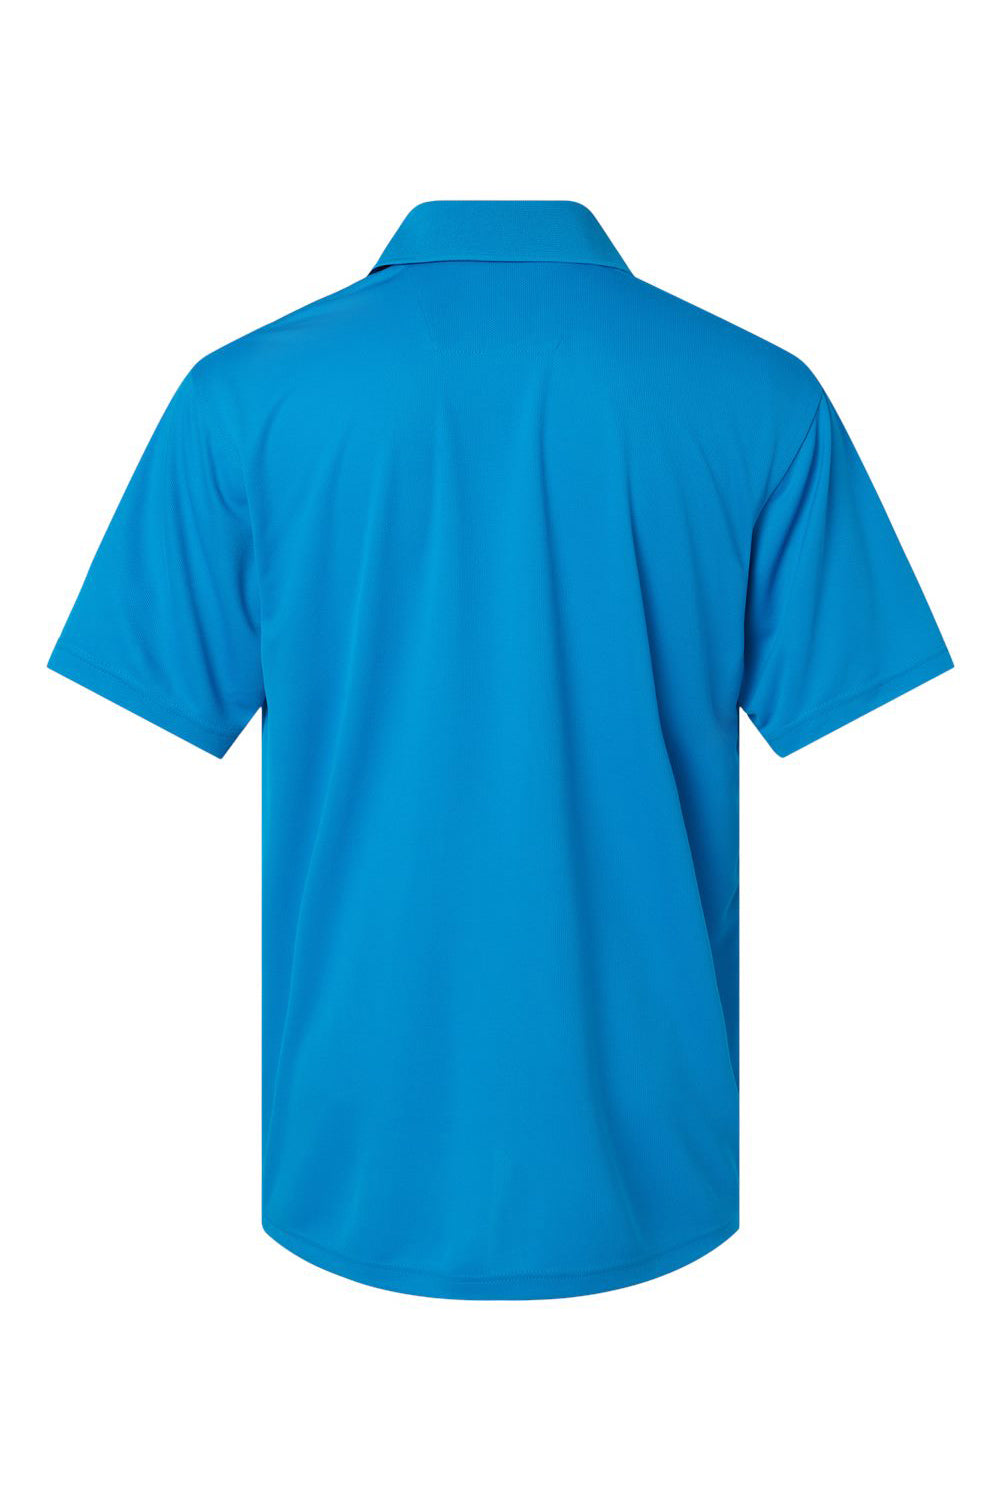 Paragon 100 Mens Saratoga Performance Mini Mesh Short Sleeve Polo Shirt Turquoise Blue Flat Back